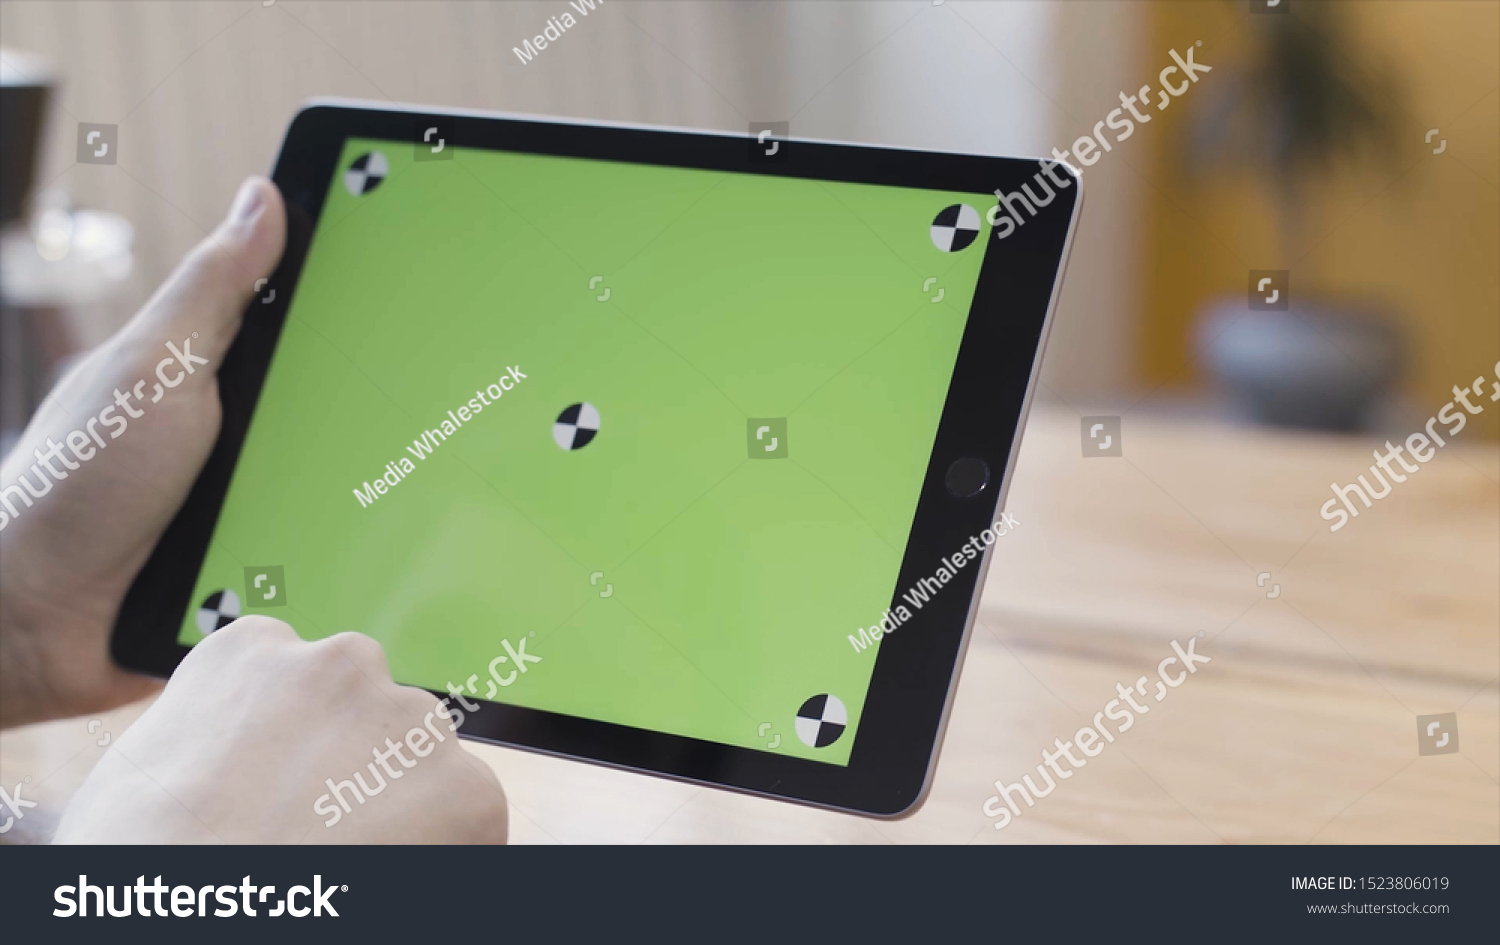 870 Ipad green screen Images, Stock Photos & Vectors | Shutterstock